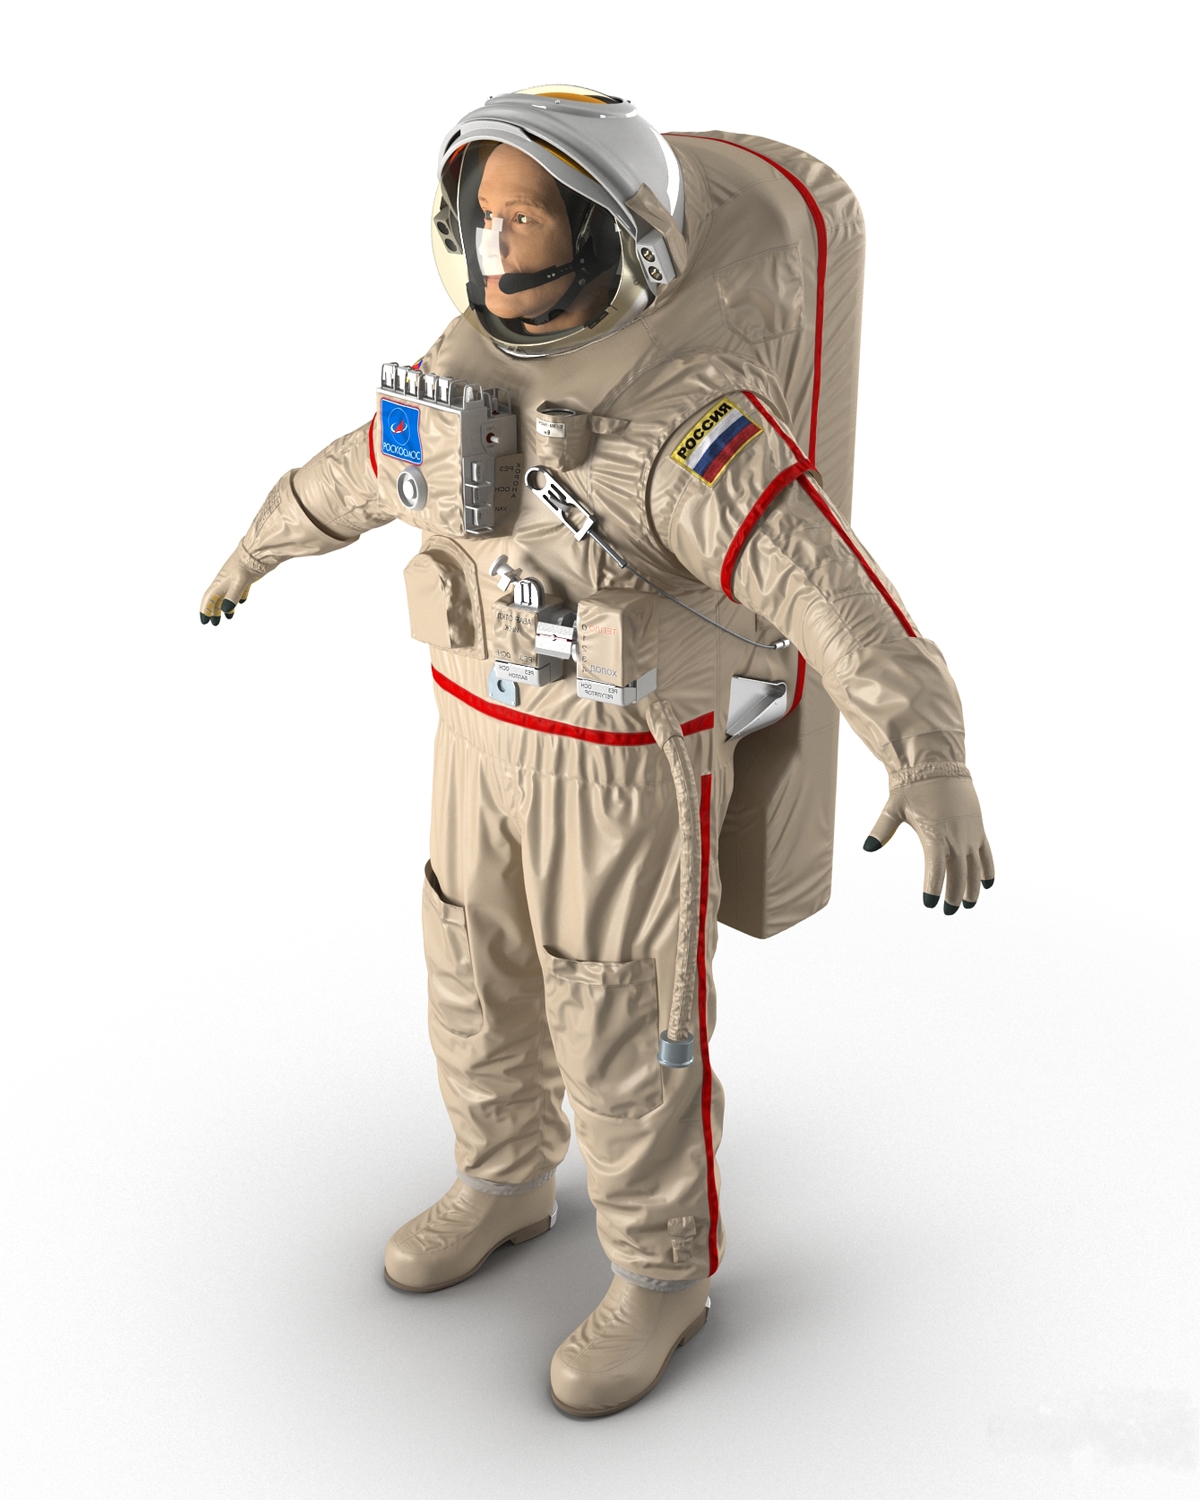 Специальные скафандры. Орлан костюм Космонавта. Скафандр Орлан. Космический скафандр Орлан. Скафандр Космонавта Роскосмоса.